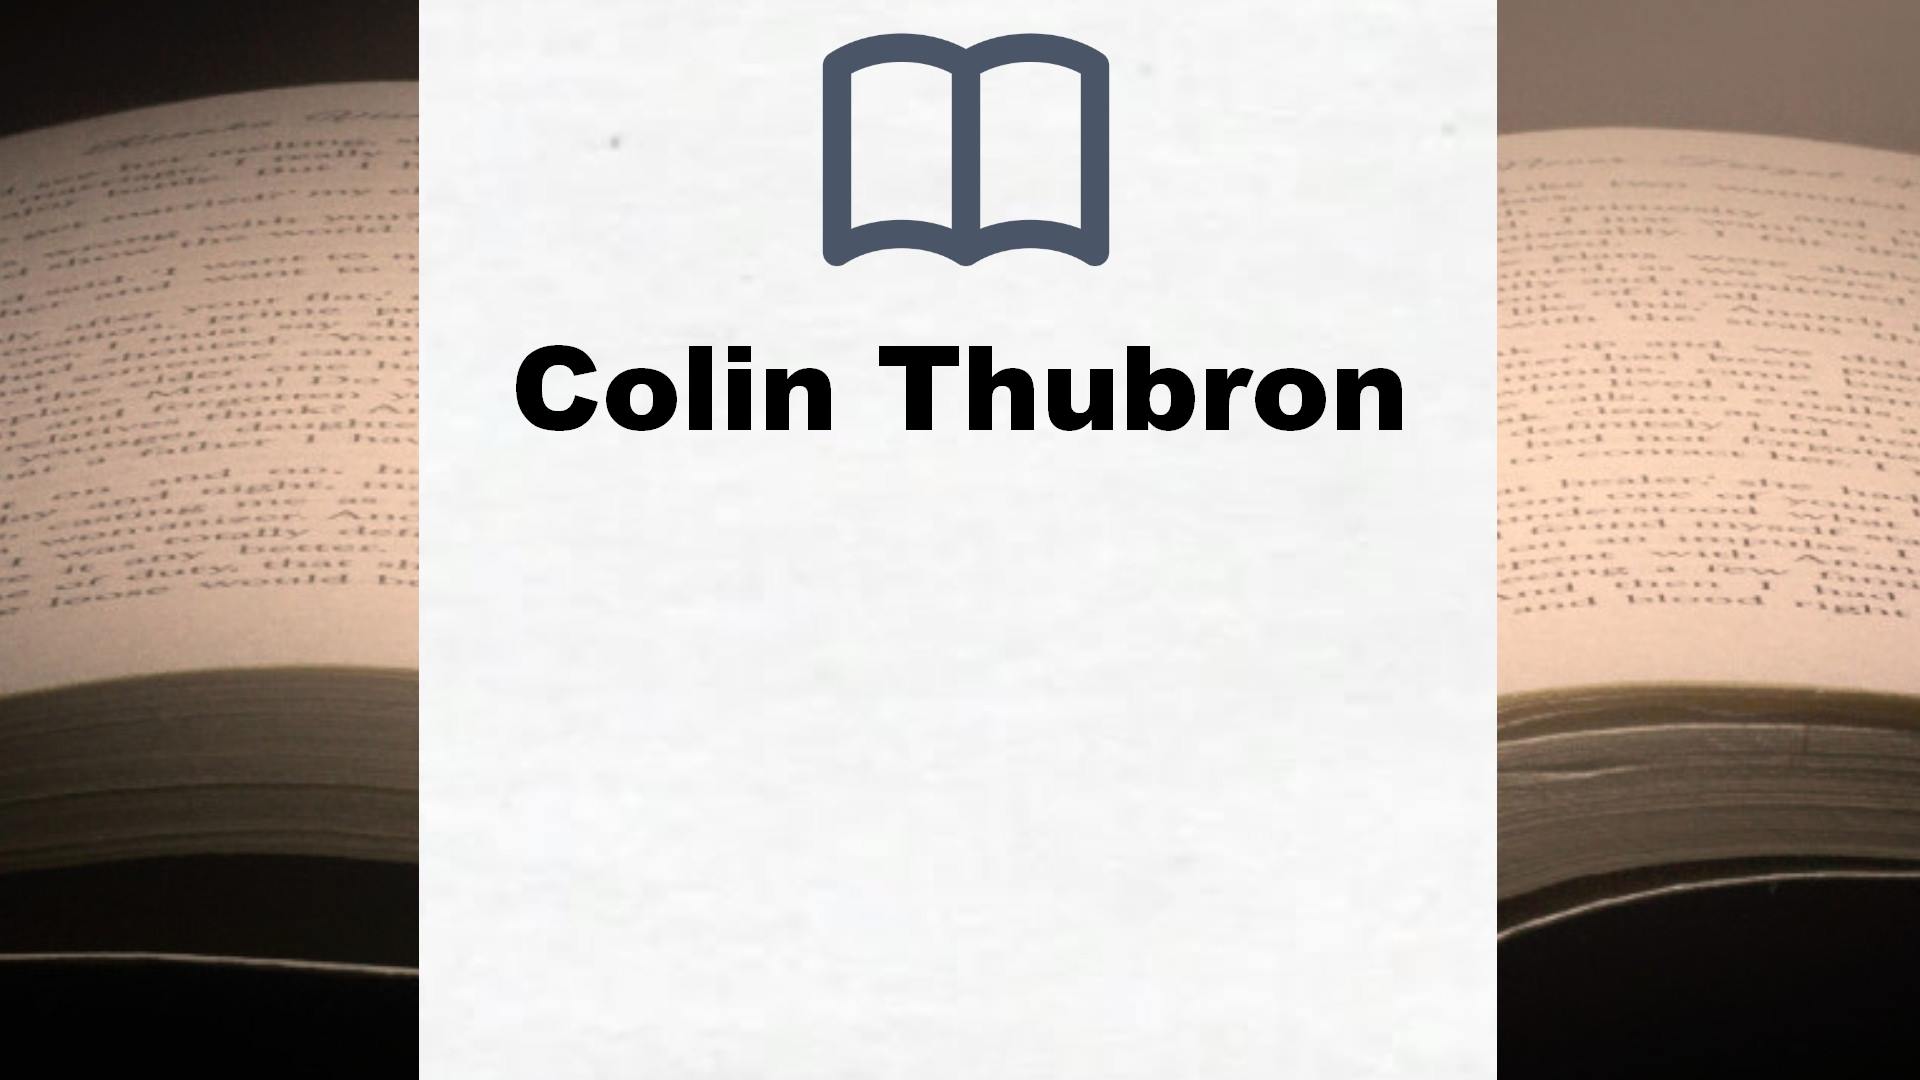 Libros Colin Thubron